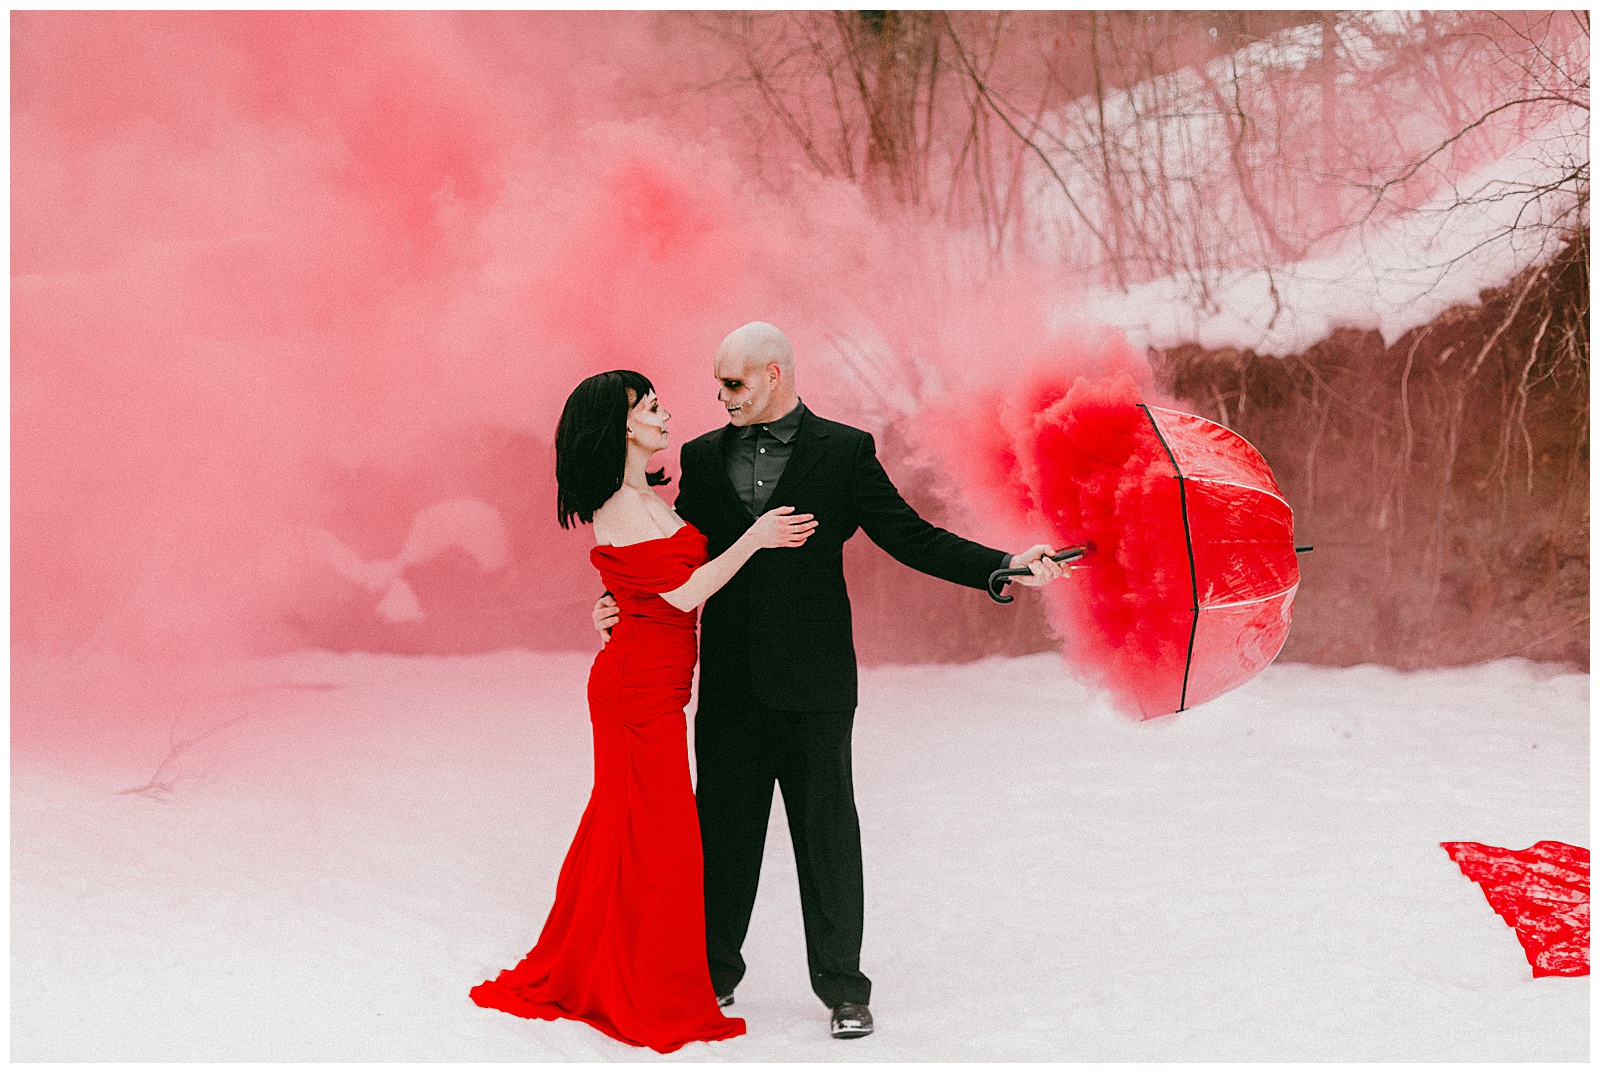 Spooky Valentine's Day Photoshoot Romantic Couples